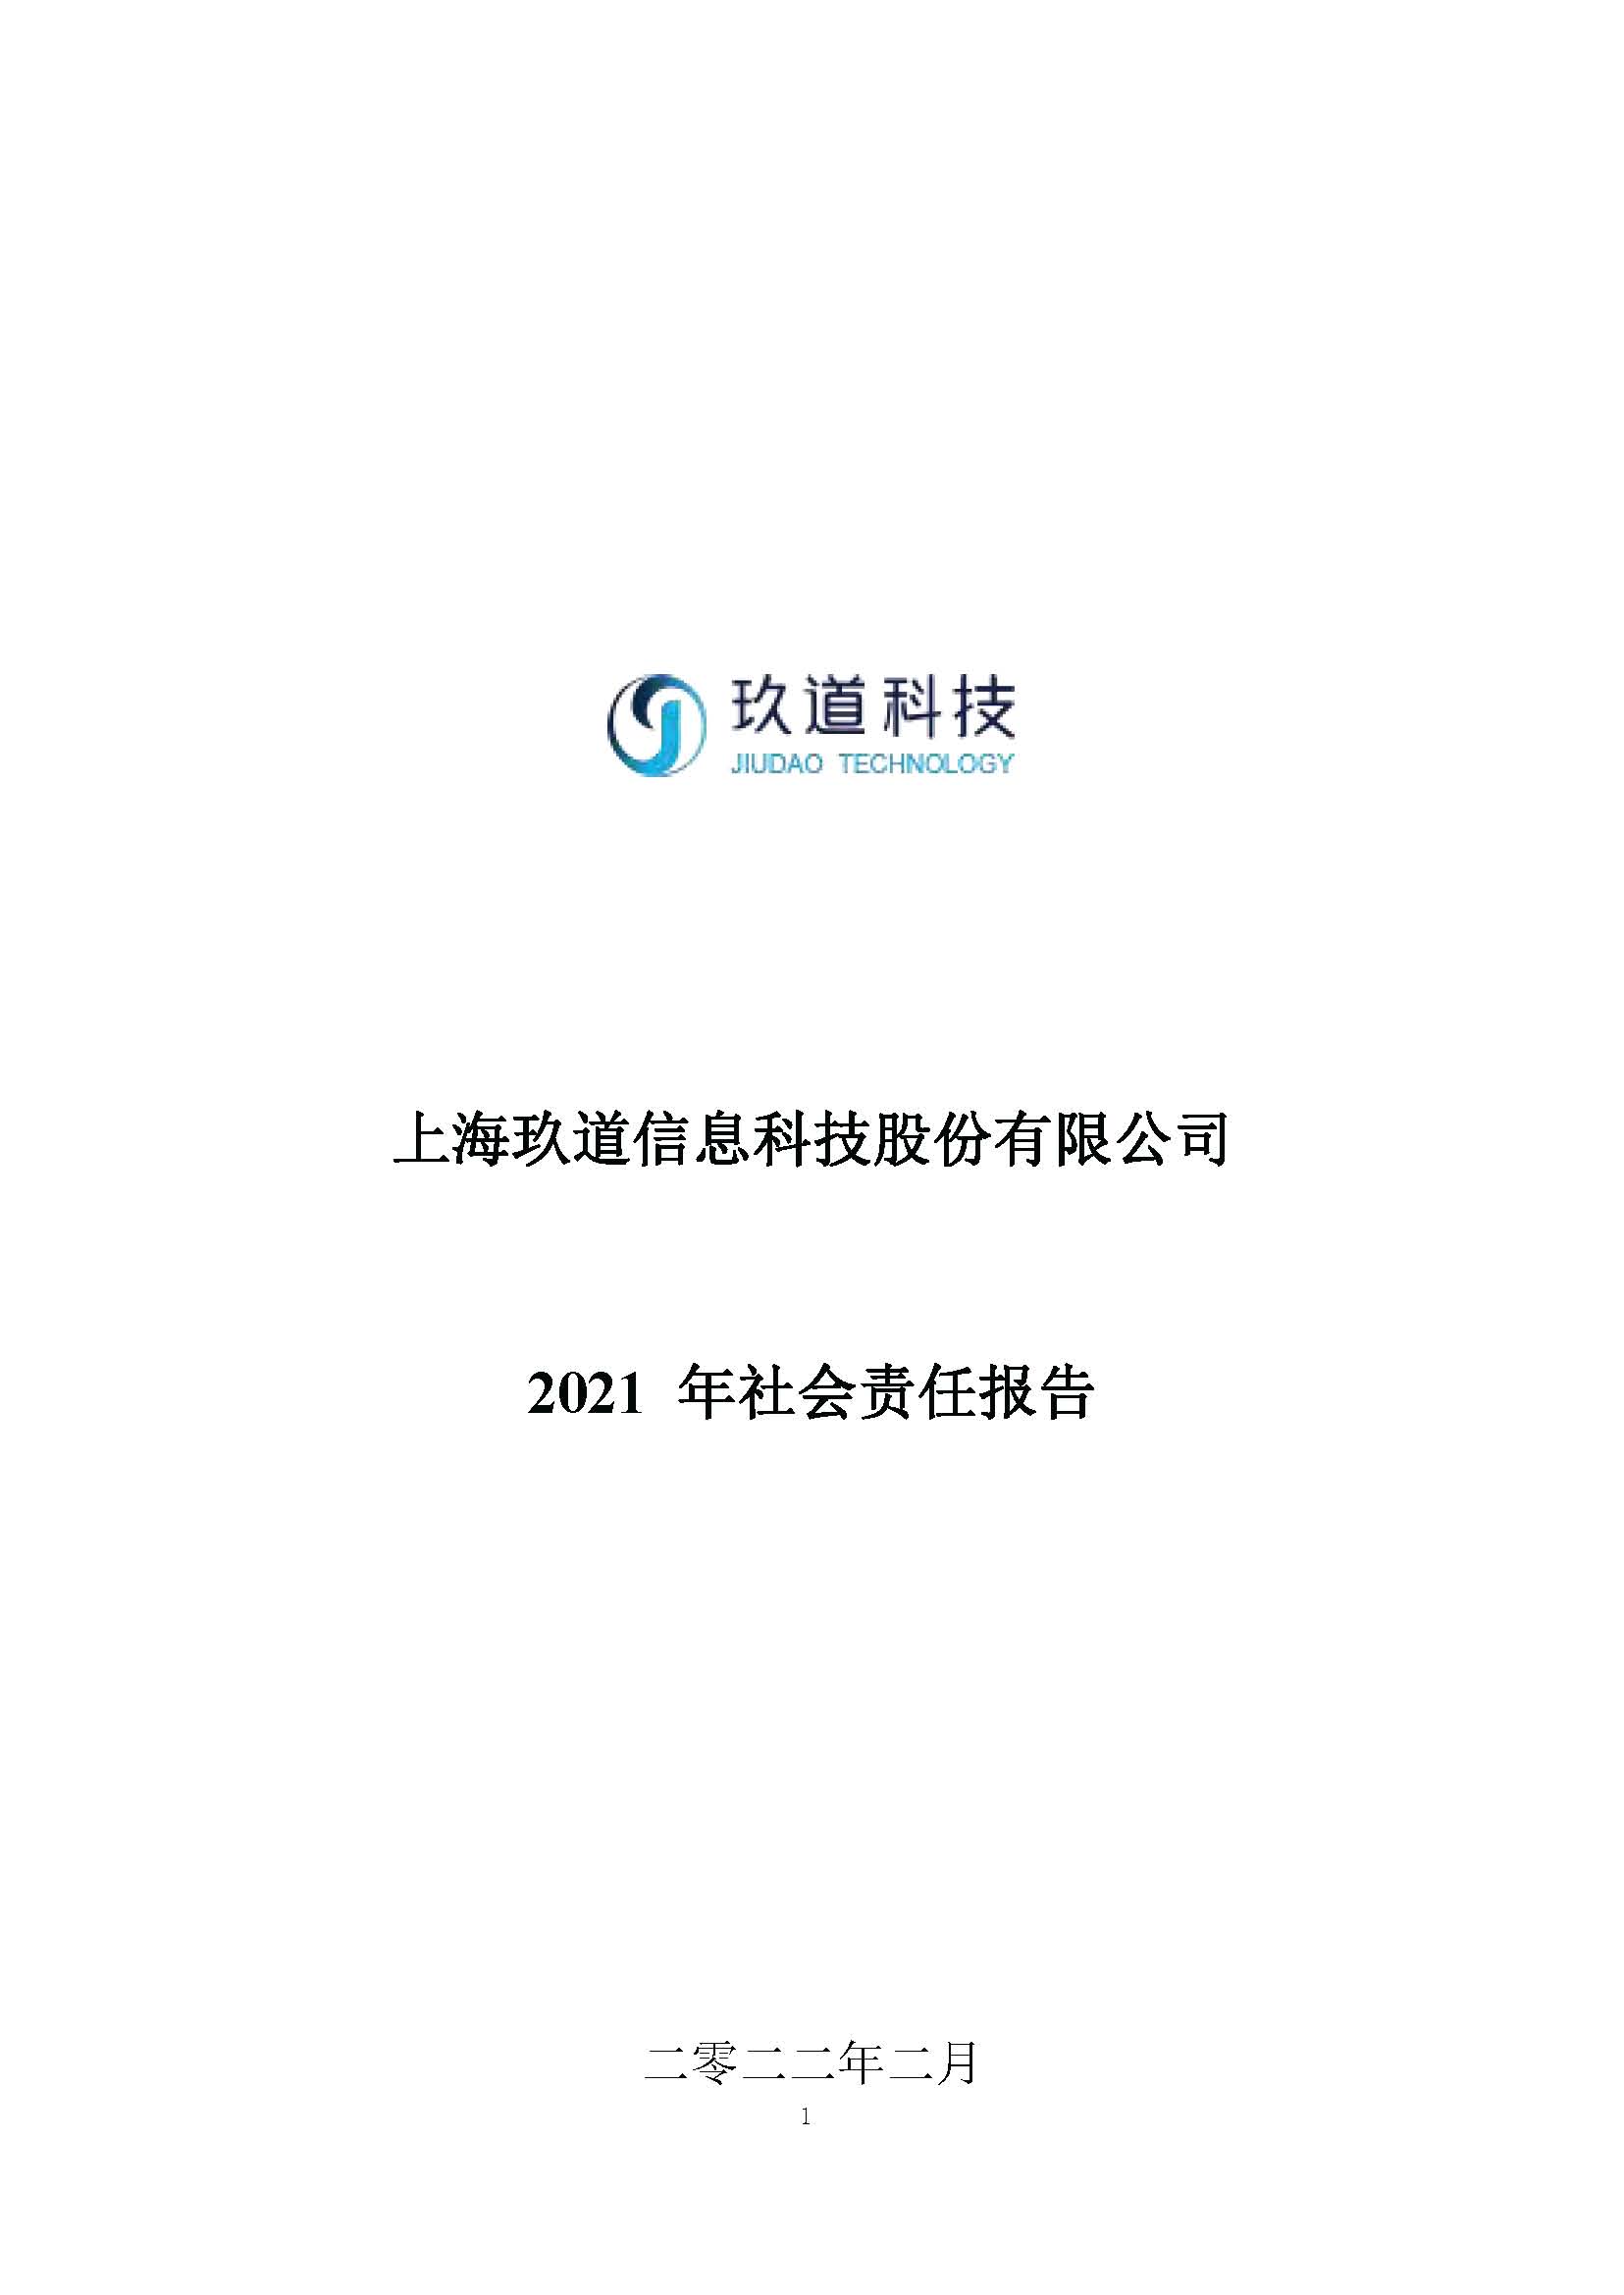 上海玖道信息科技股份有限公司21年社会责任报告